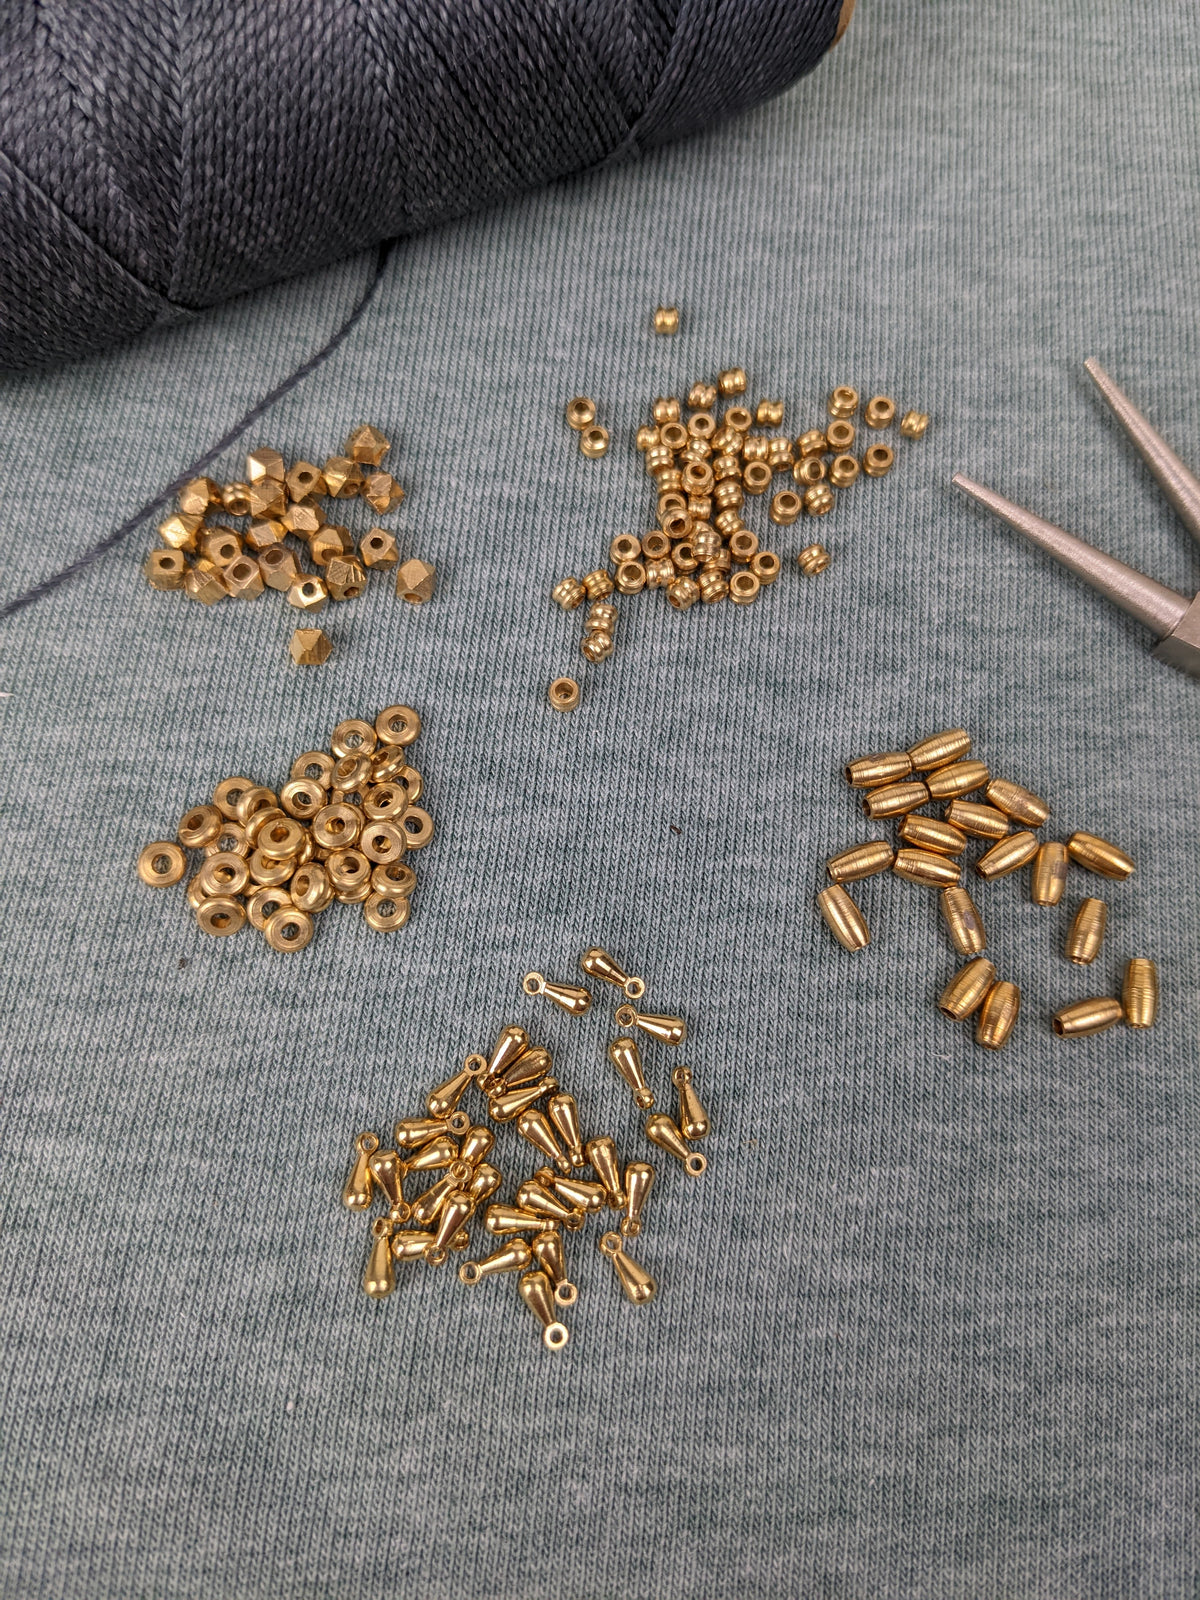 goldene Messingperlen zur Schmuckherstellung DIY Makramee zubehör spacer beads gold sonne blatt auge mond idische charms 